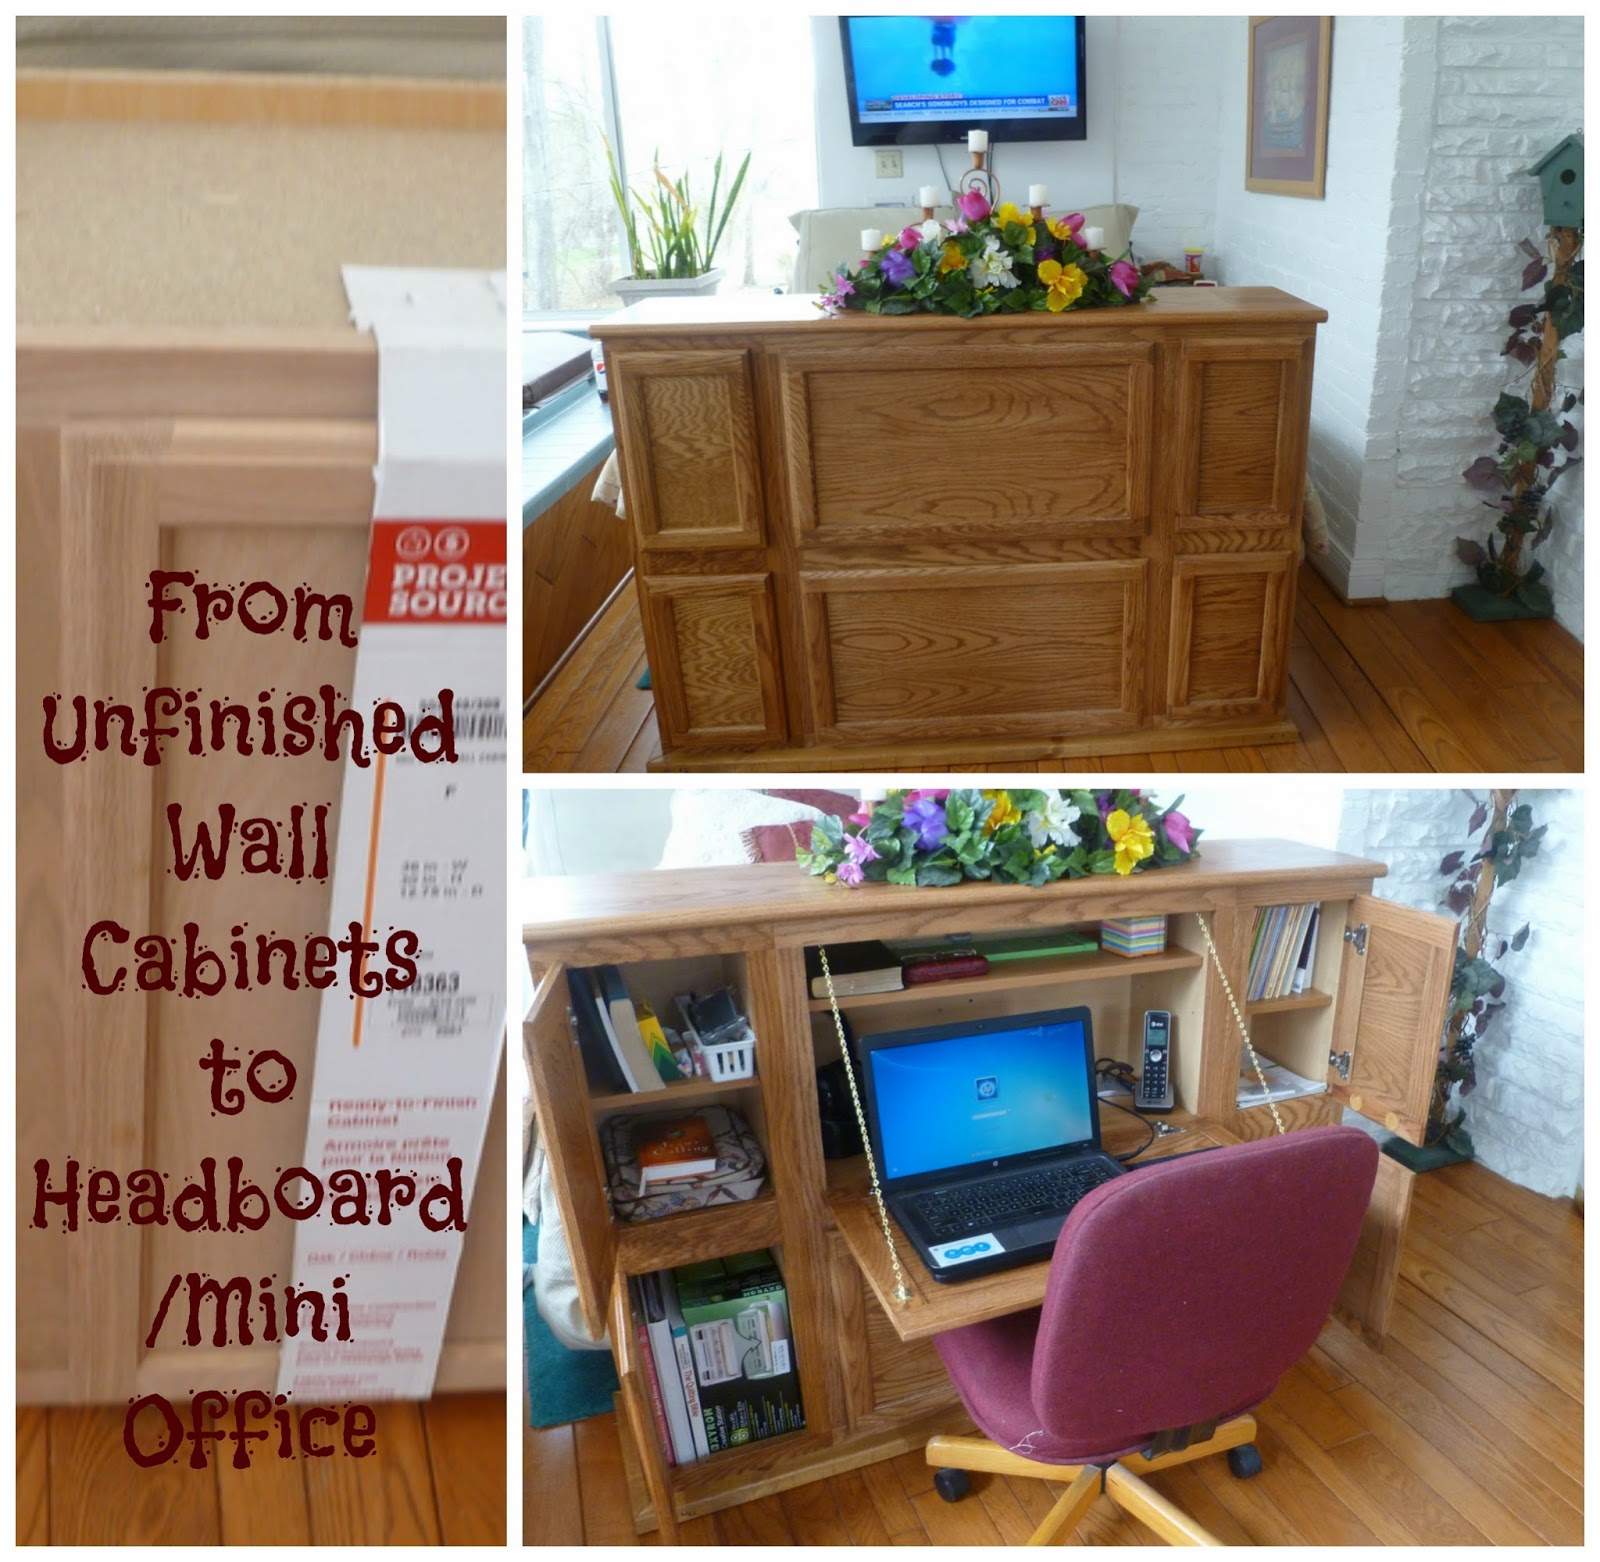 , Headboard/ Mini Office, Growing in Grace